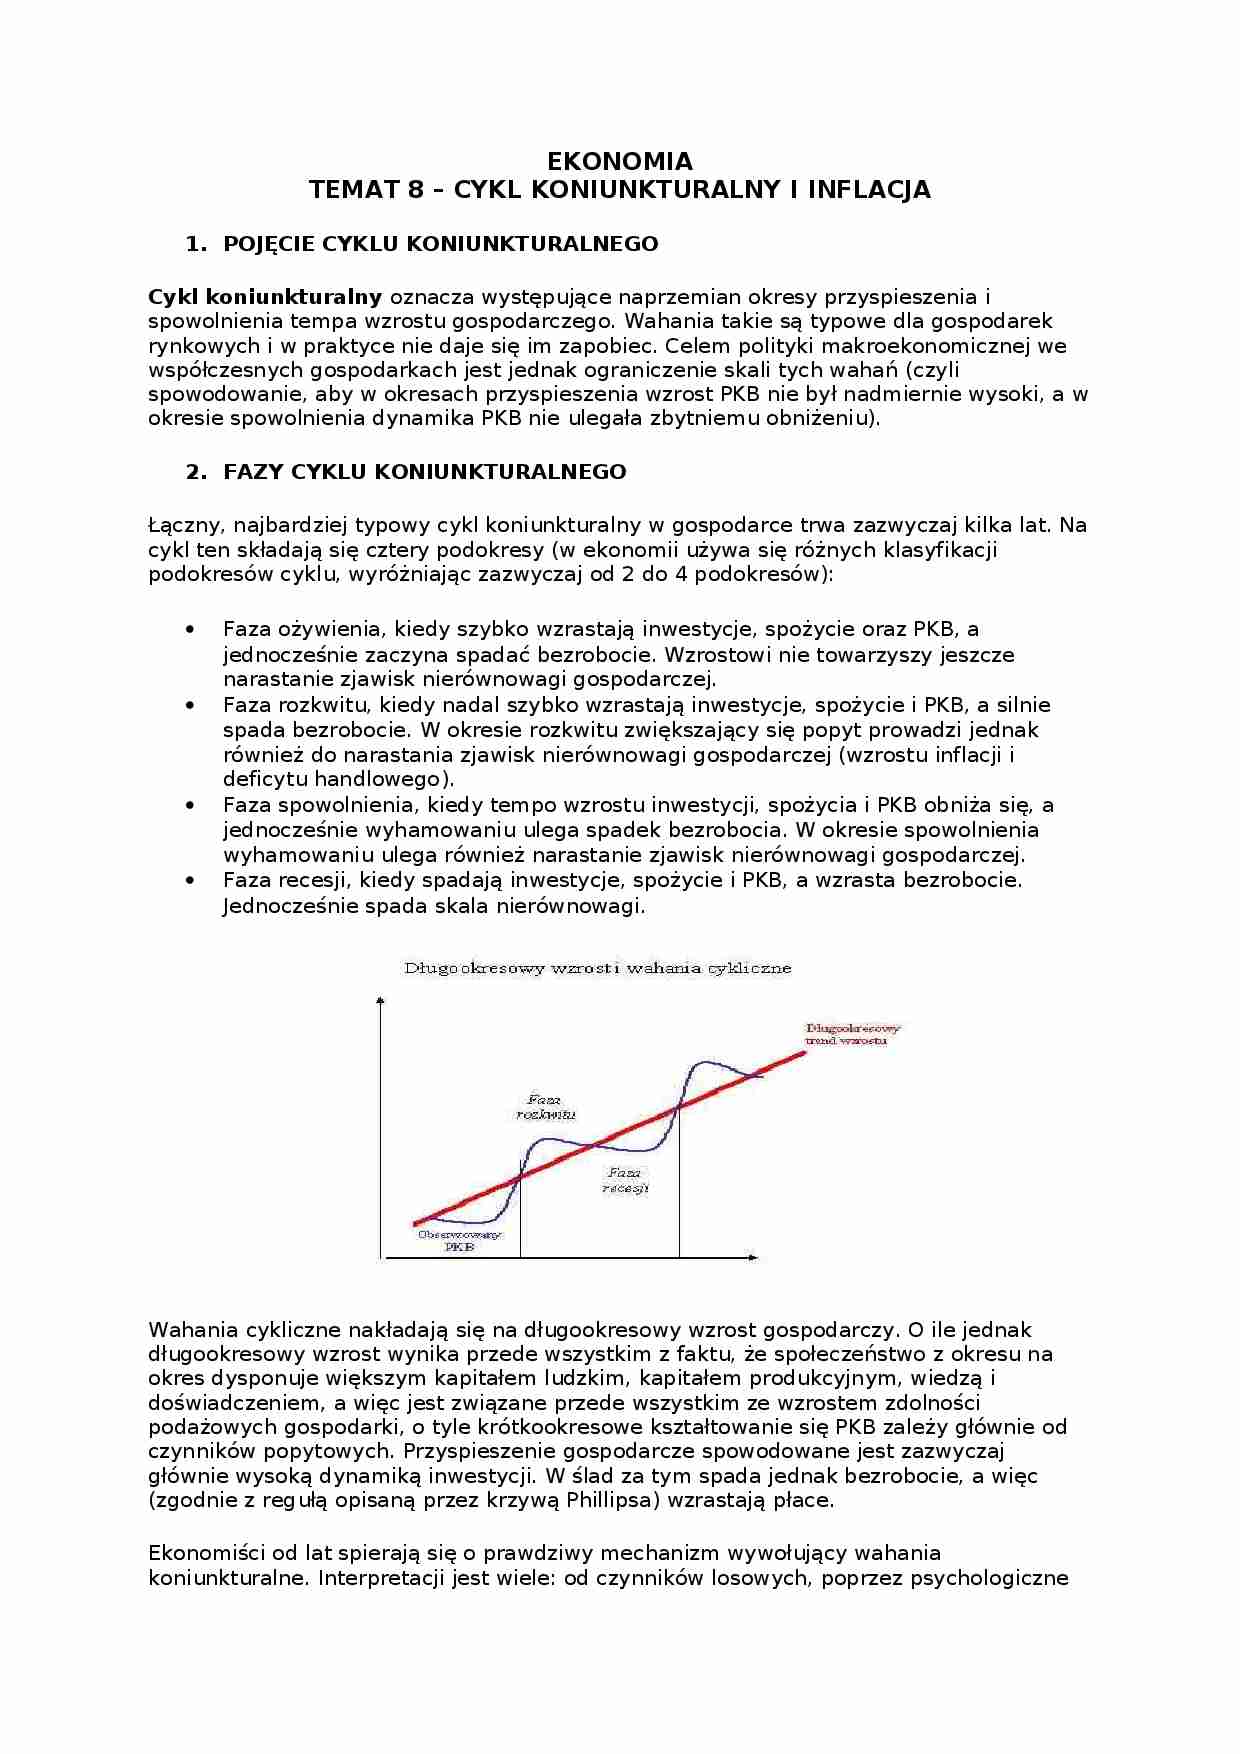 Cykl koniunkturalny i inflacja - omówienie  - strona 1